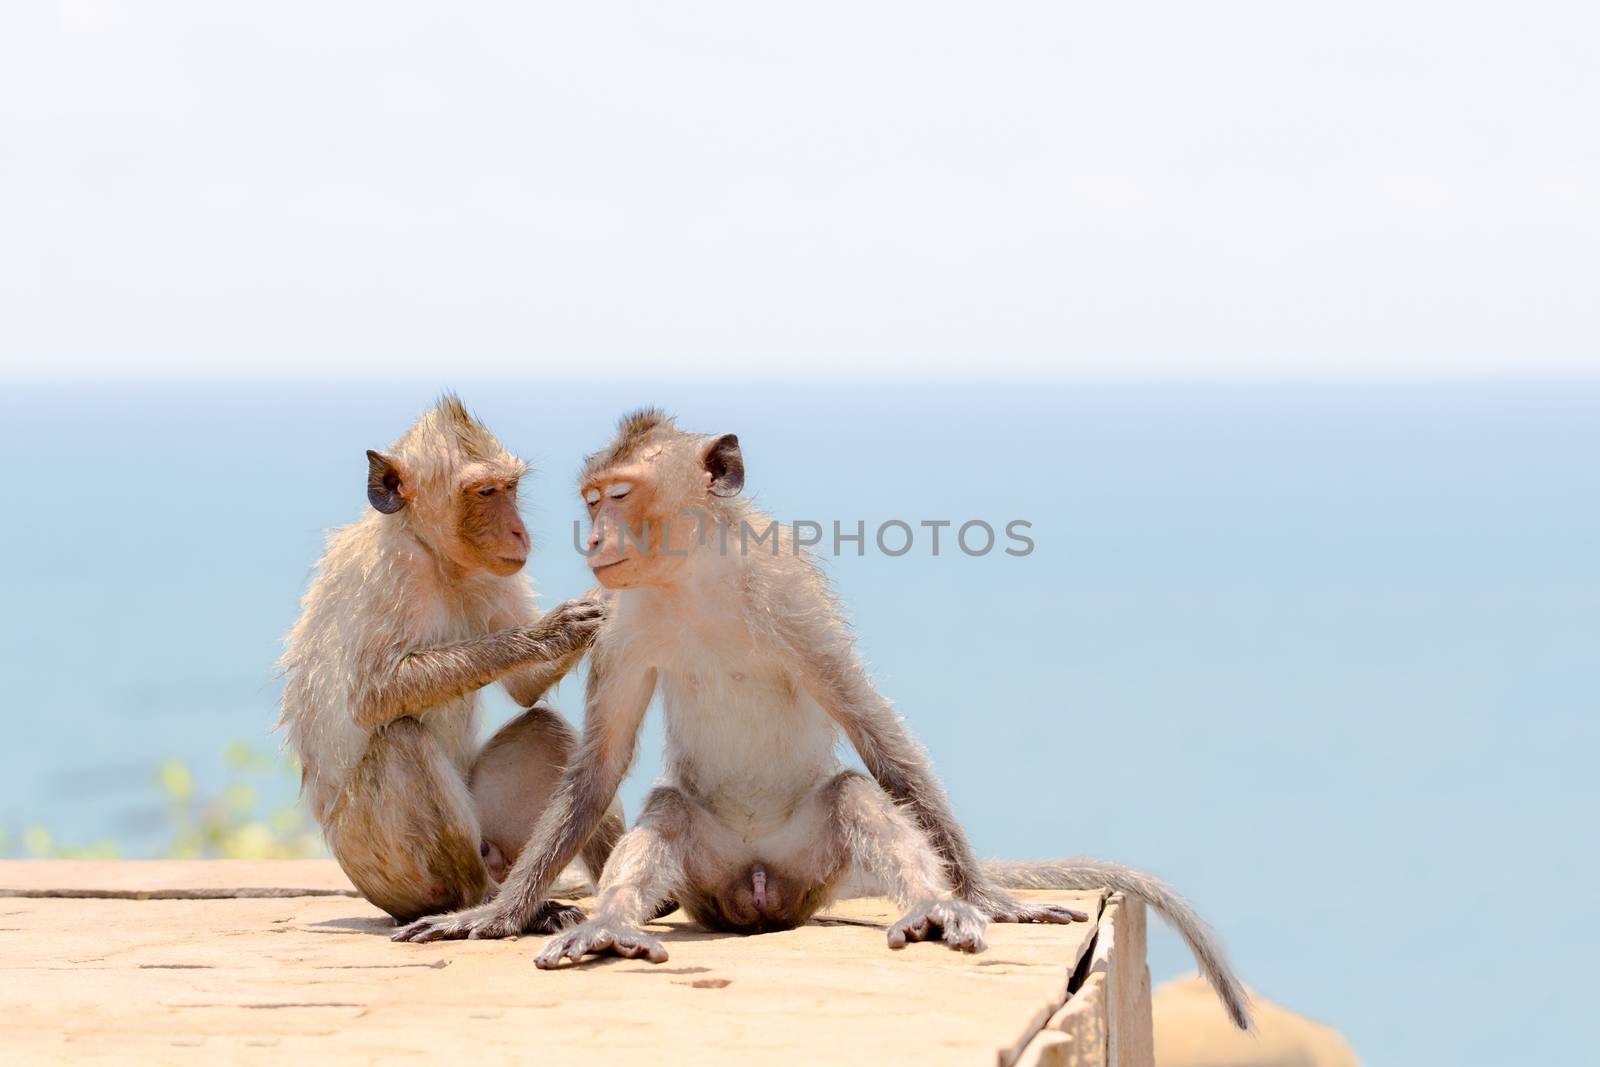 Couple of cute monkey in seaside